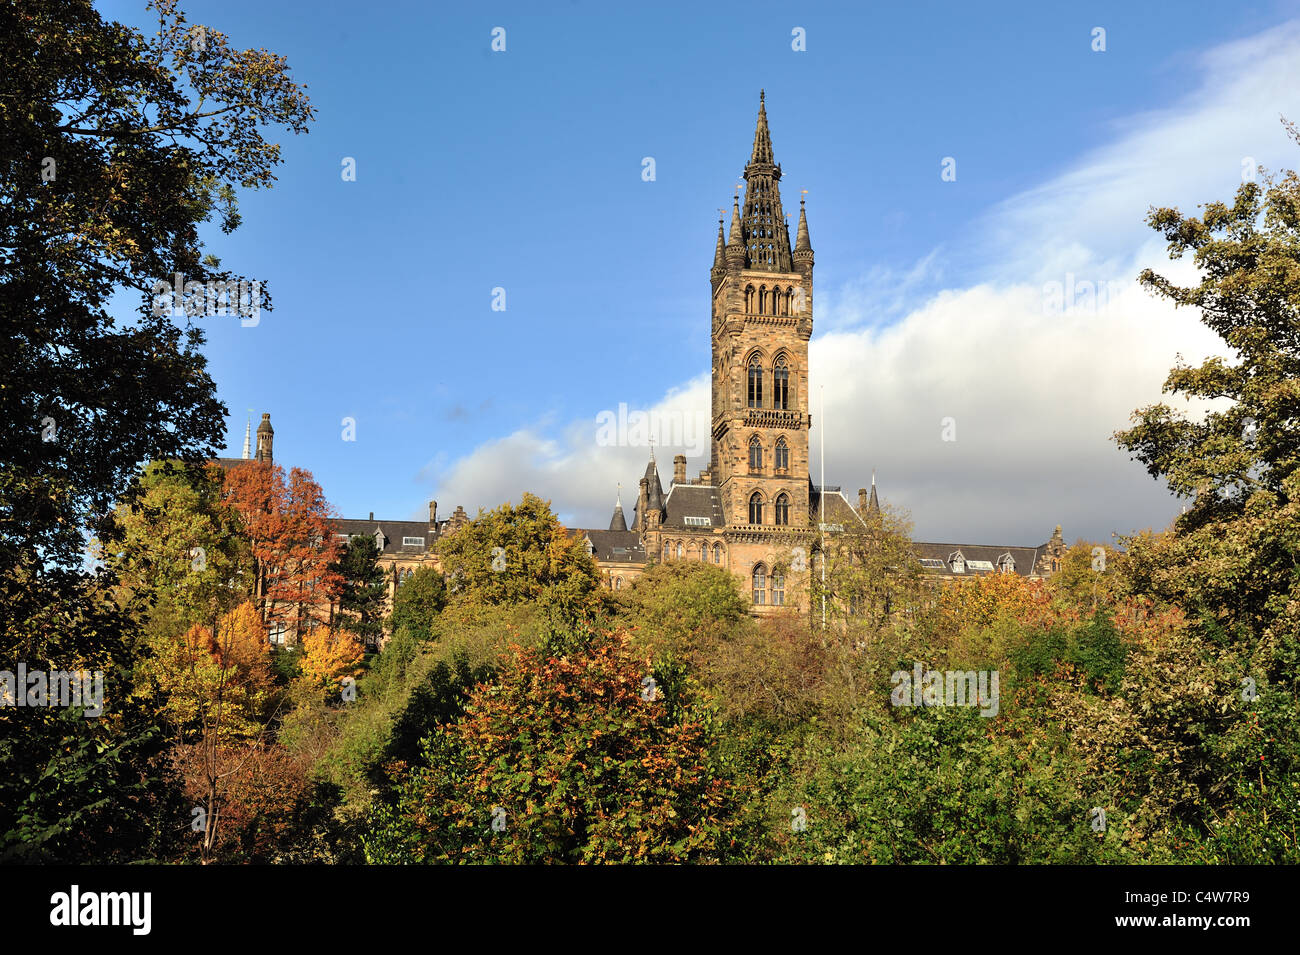 University of Glasgow bathed in autumn sunshine Stock Photo